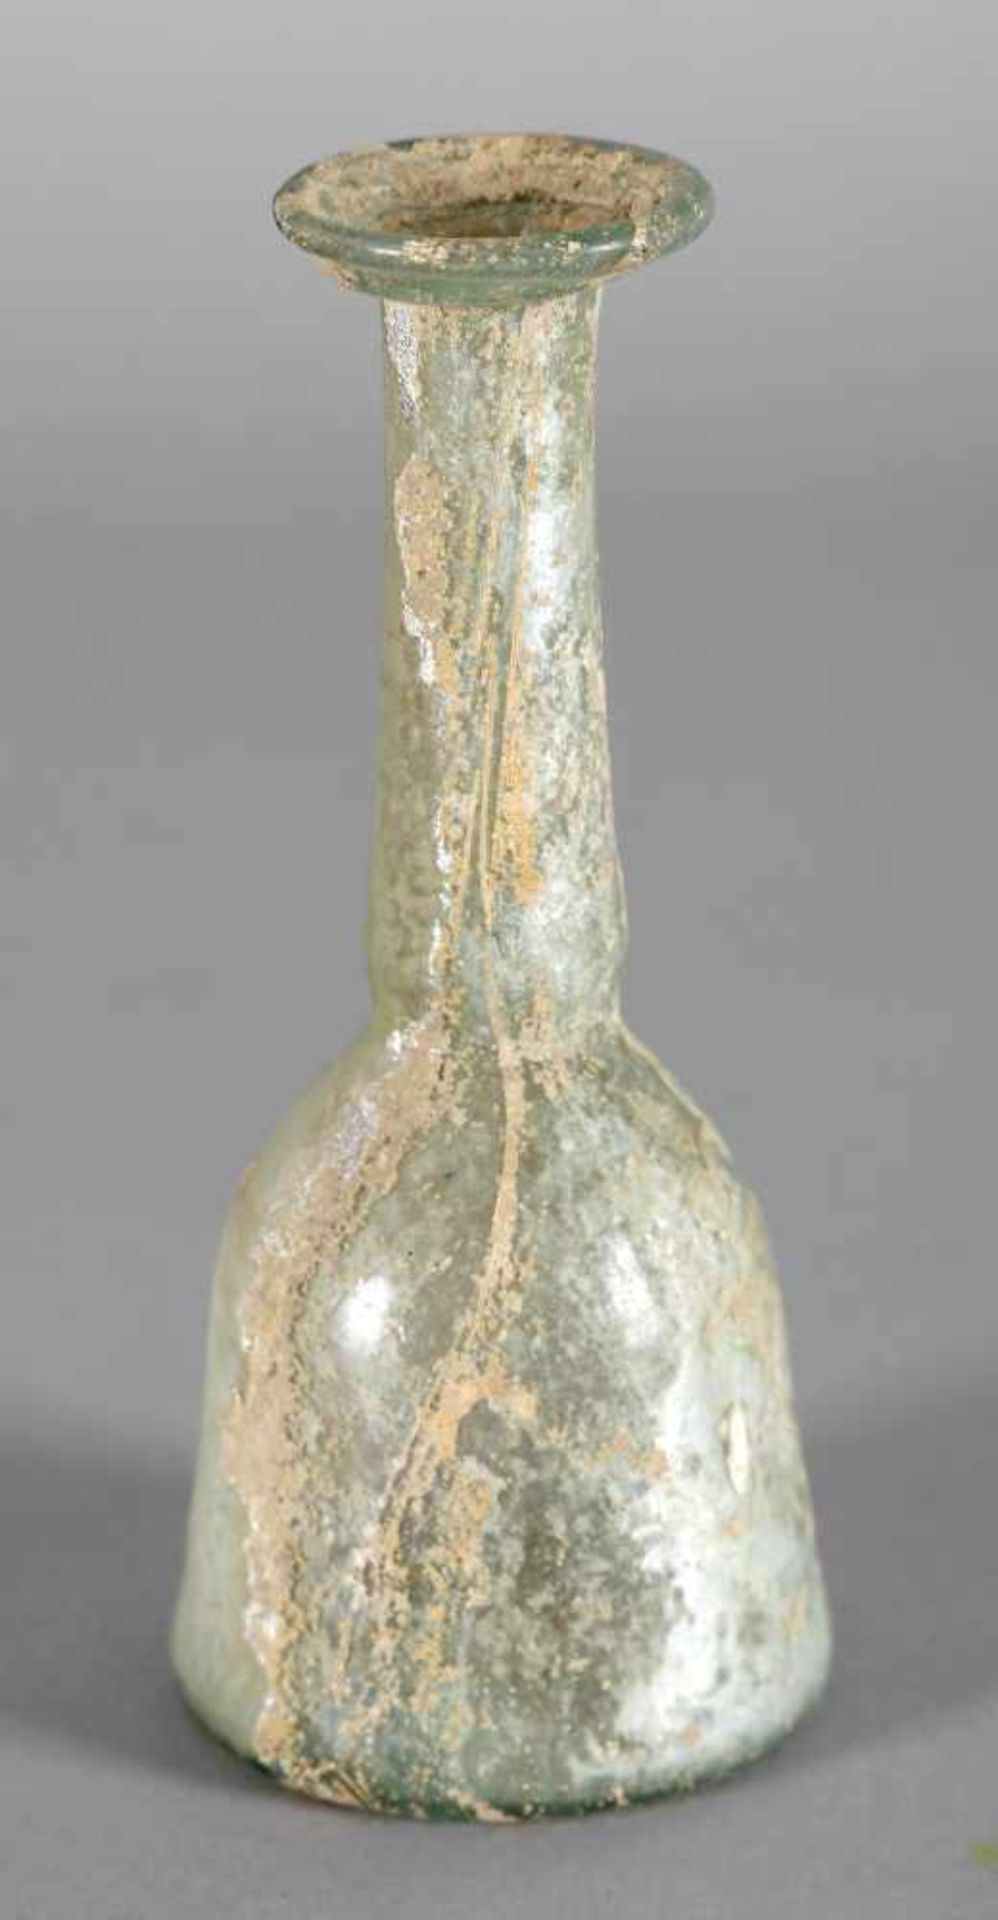 Römische Flasche aus transluzidem grünlichem Glas, Typ Dalmatien, 2./3. Jh.konische fußlose Form mit